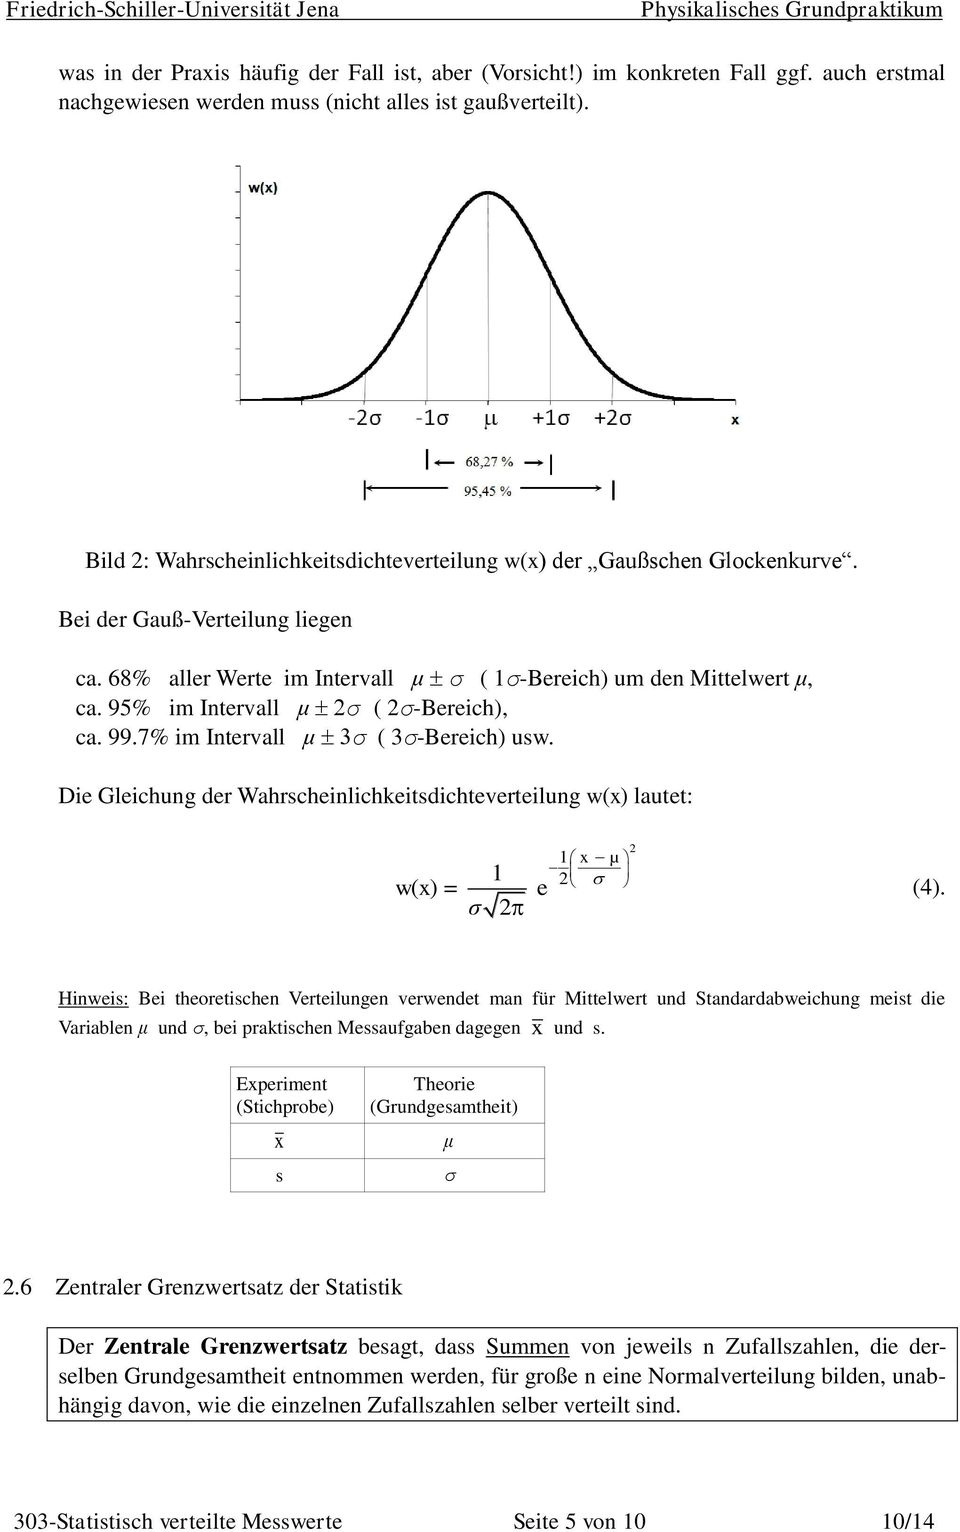 95% im Intervall μ σ ( 2σ-Bereich), ca. 99.7% im Intervall μ σ ( 3σ-Bereich) usw. Die Gleichung der Wahrscheinlichkeitsdichteverteilung w(x) lautet: 1 wx ( ) = e σ 2 1 x µ 2 2 (4).